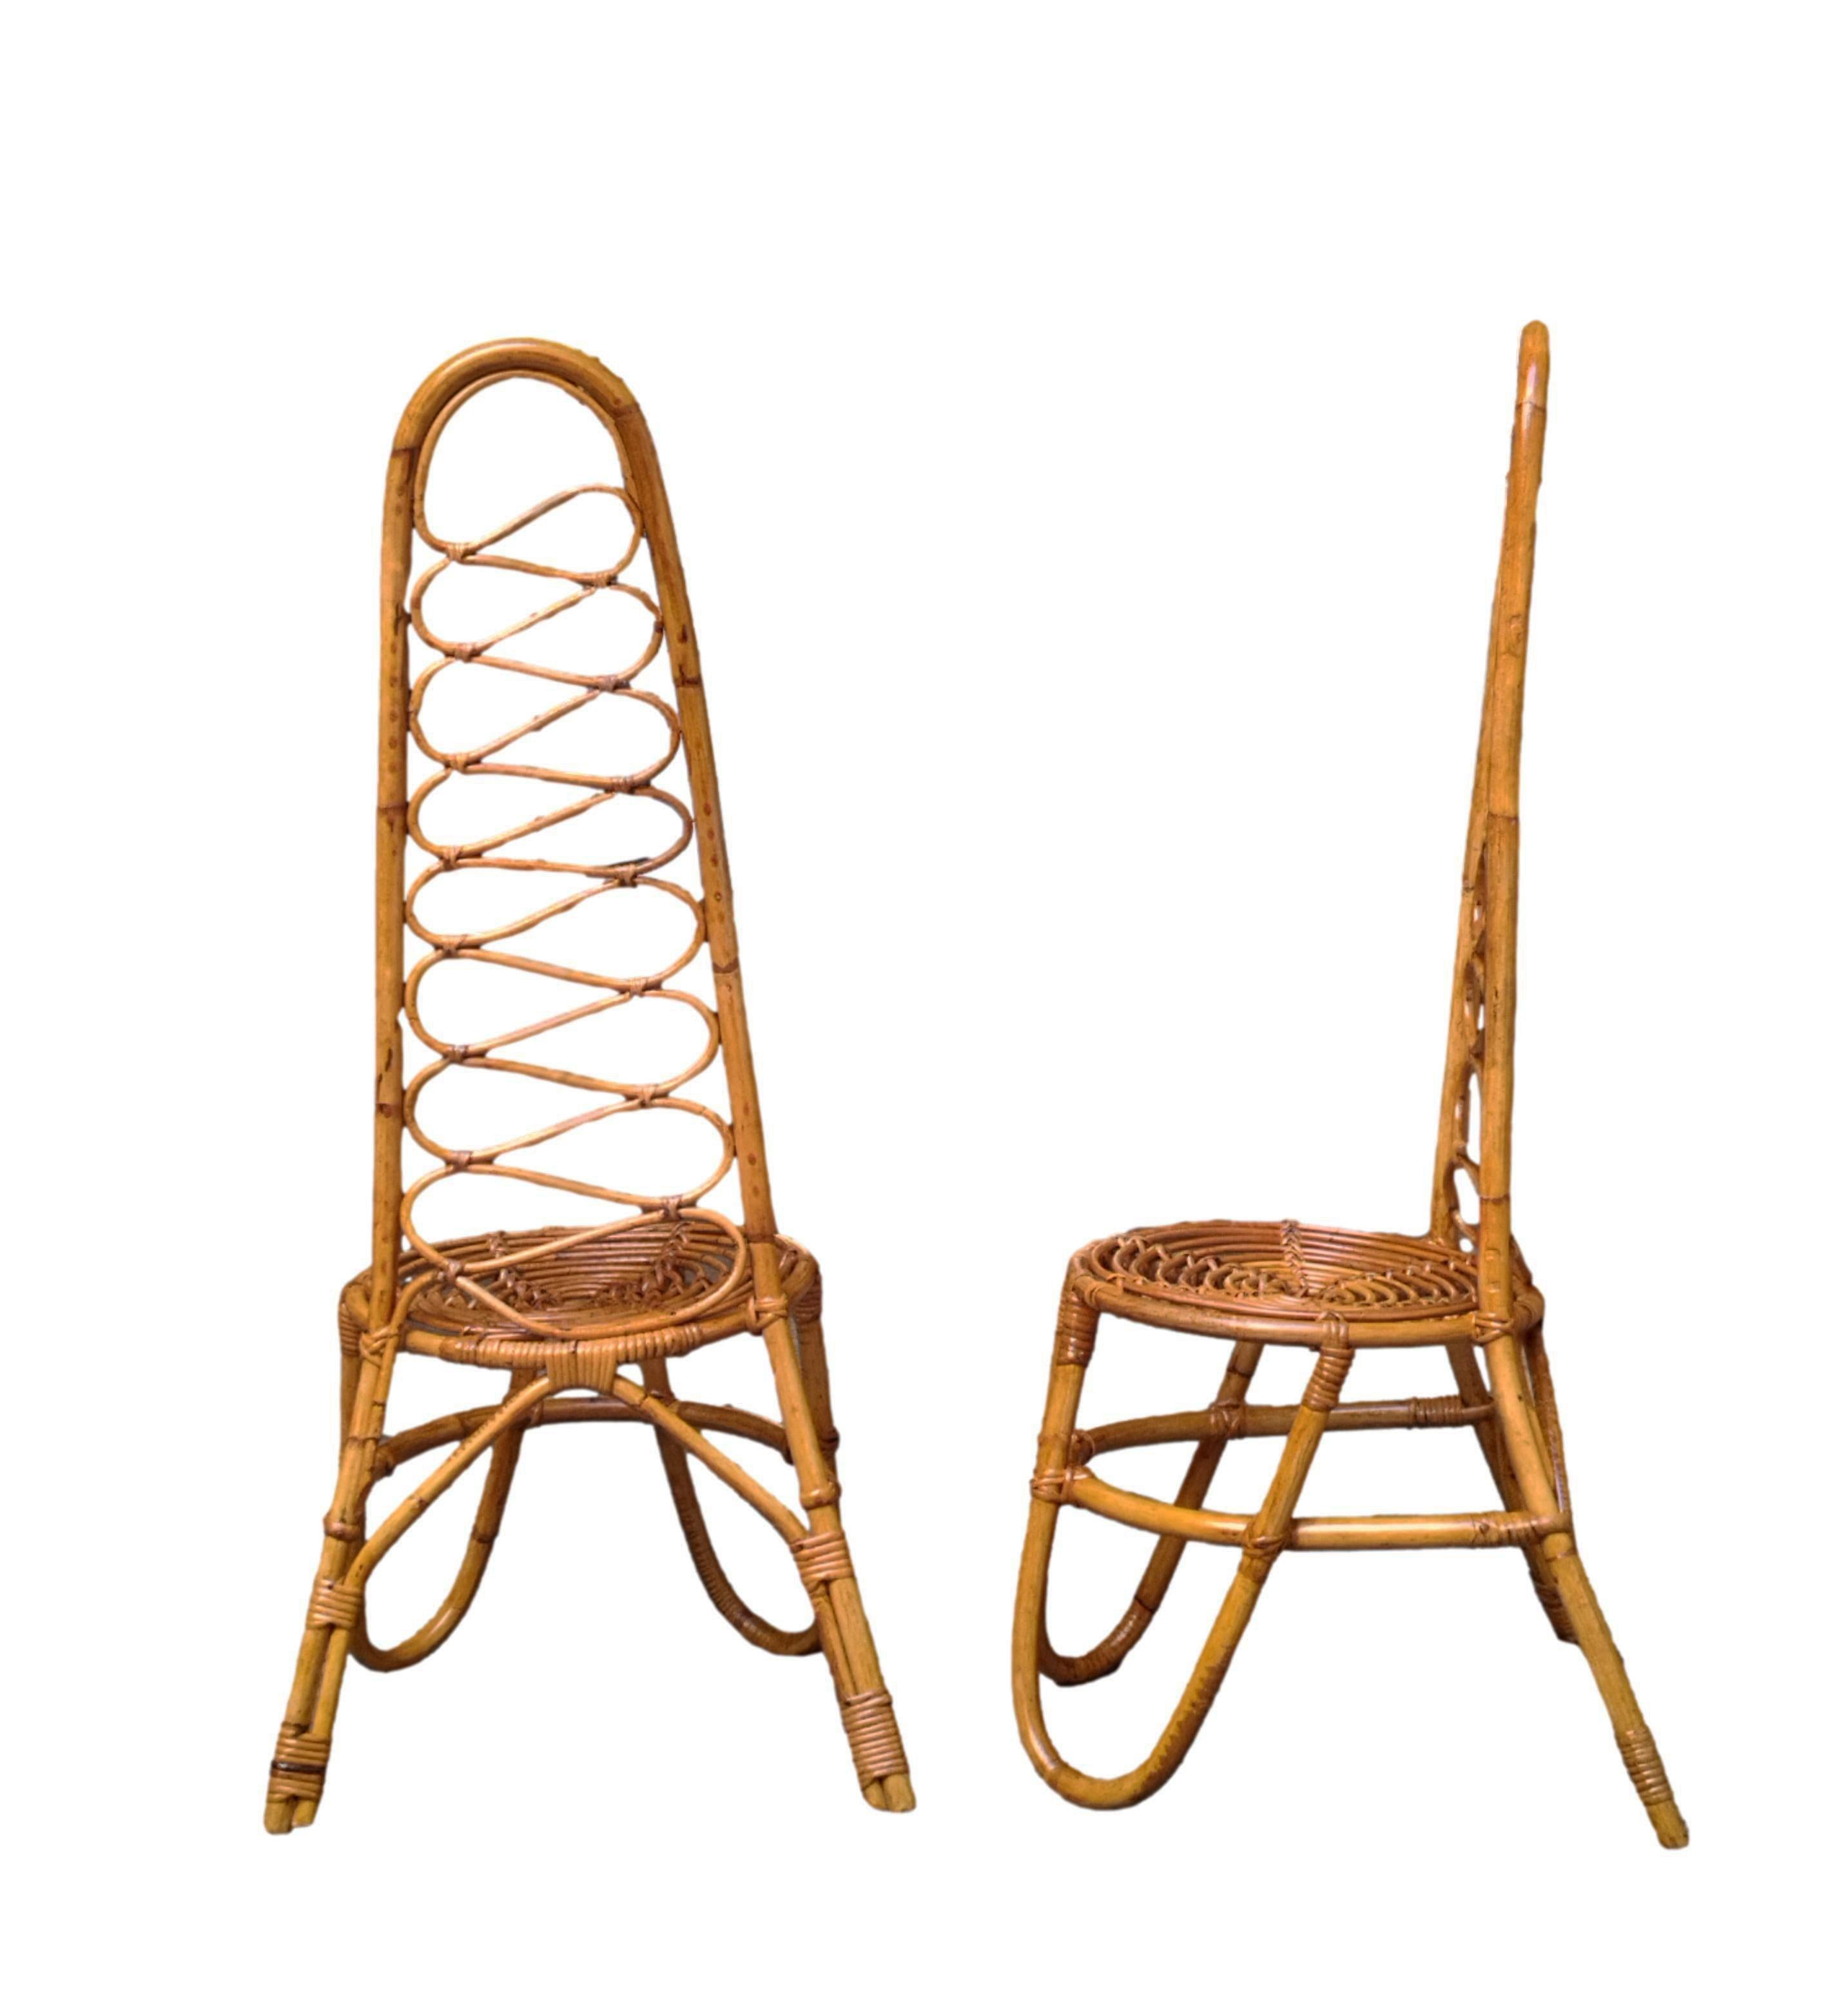 Seltenes Paar originaler niedriger Stühle aus den 1960er Jahren mit geschwungener Bambus-Hochlehne, schönem Design und bequemer Sitzfläche. Italienische Produktion 1960.